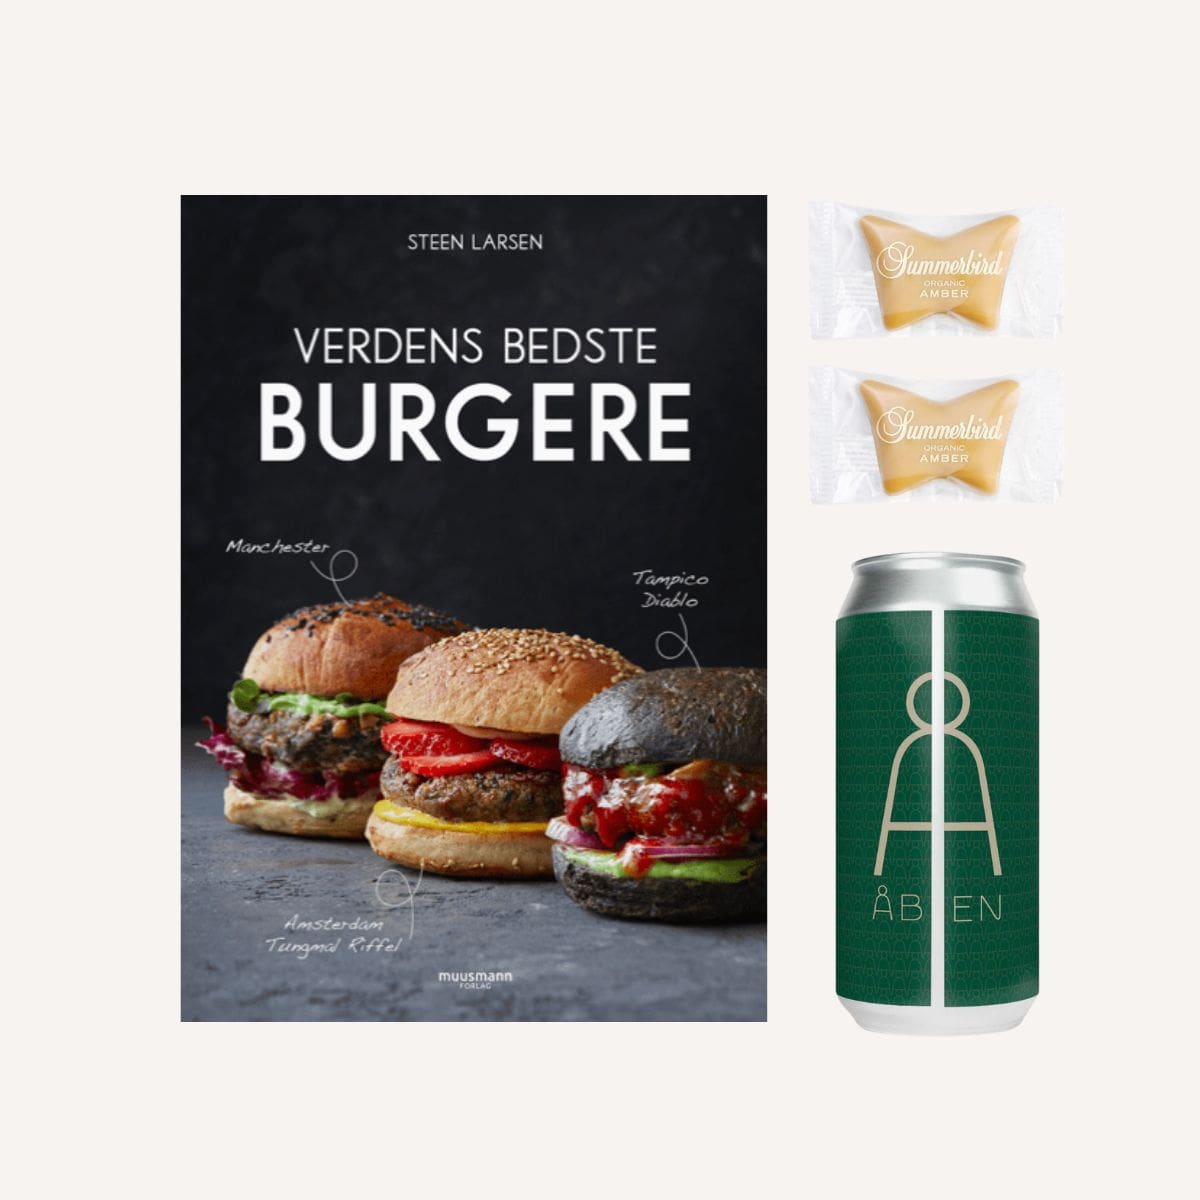 Brug Fars dags gave | Burger & Øl til en forbedret oplevelse